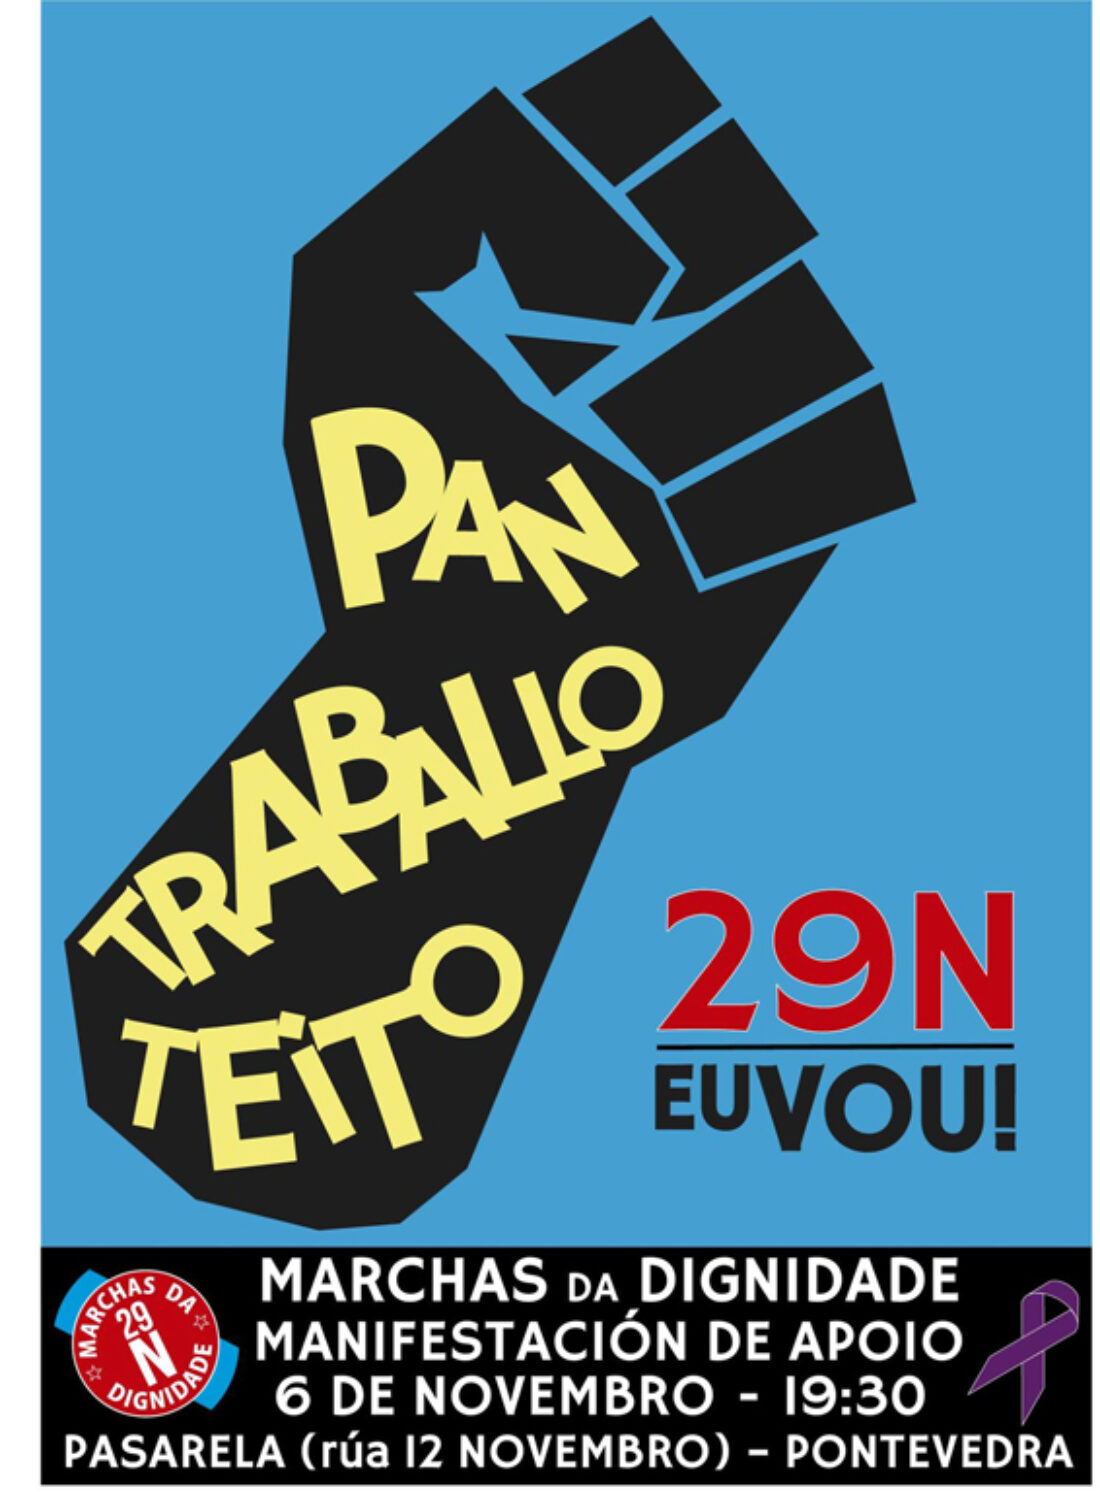 “Marcha da Dignidade”. Manifestaciones en Galicia 6 Noviembre